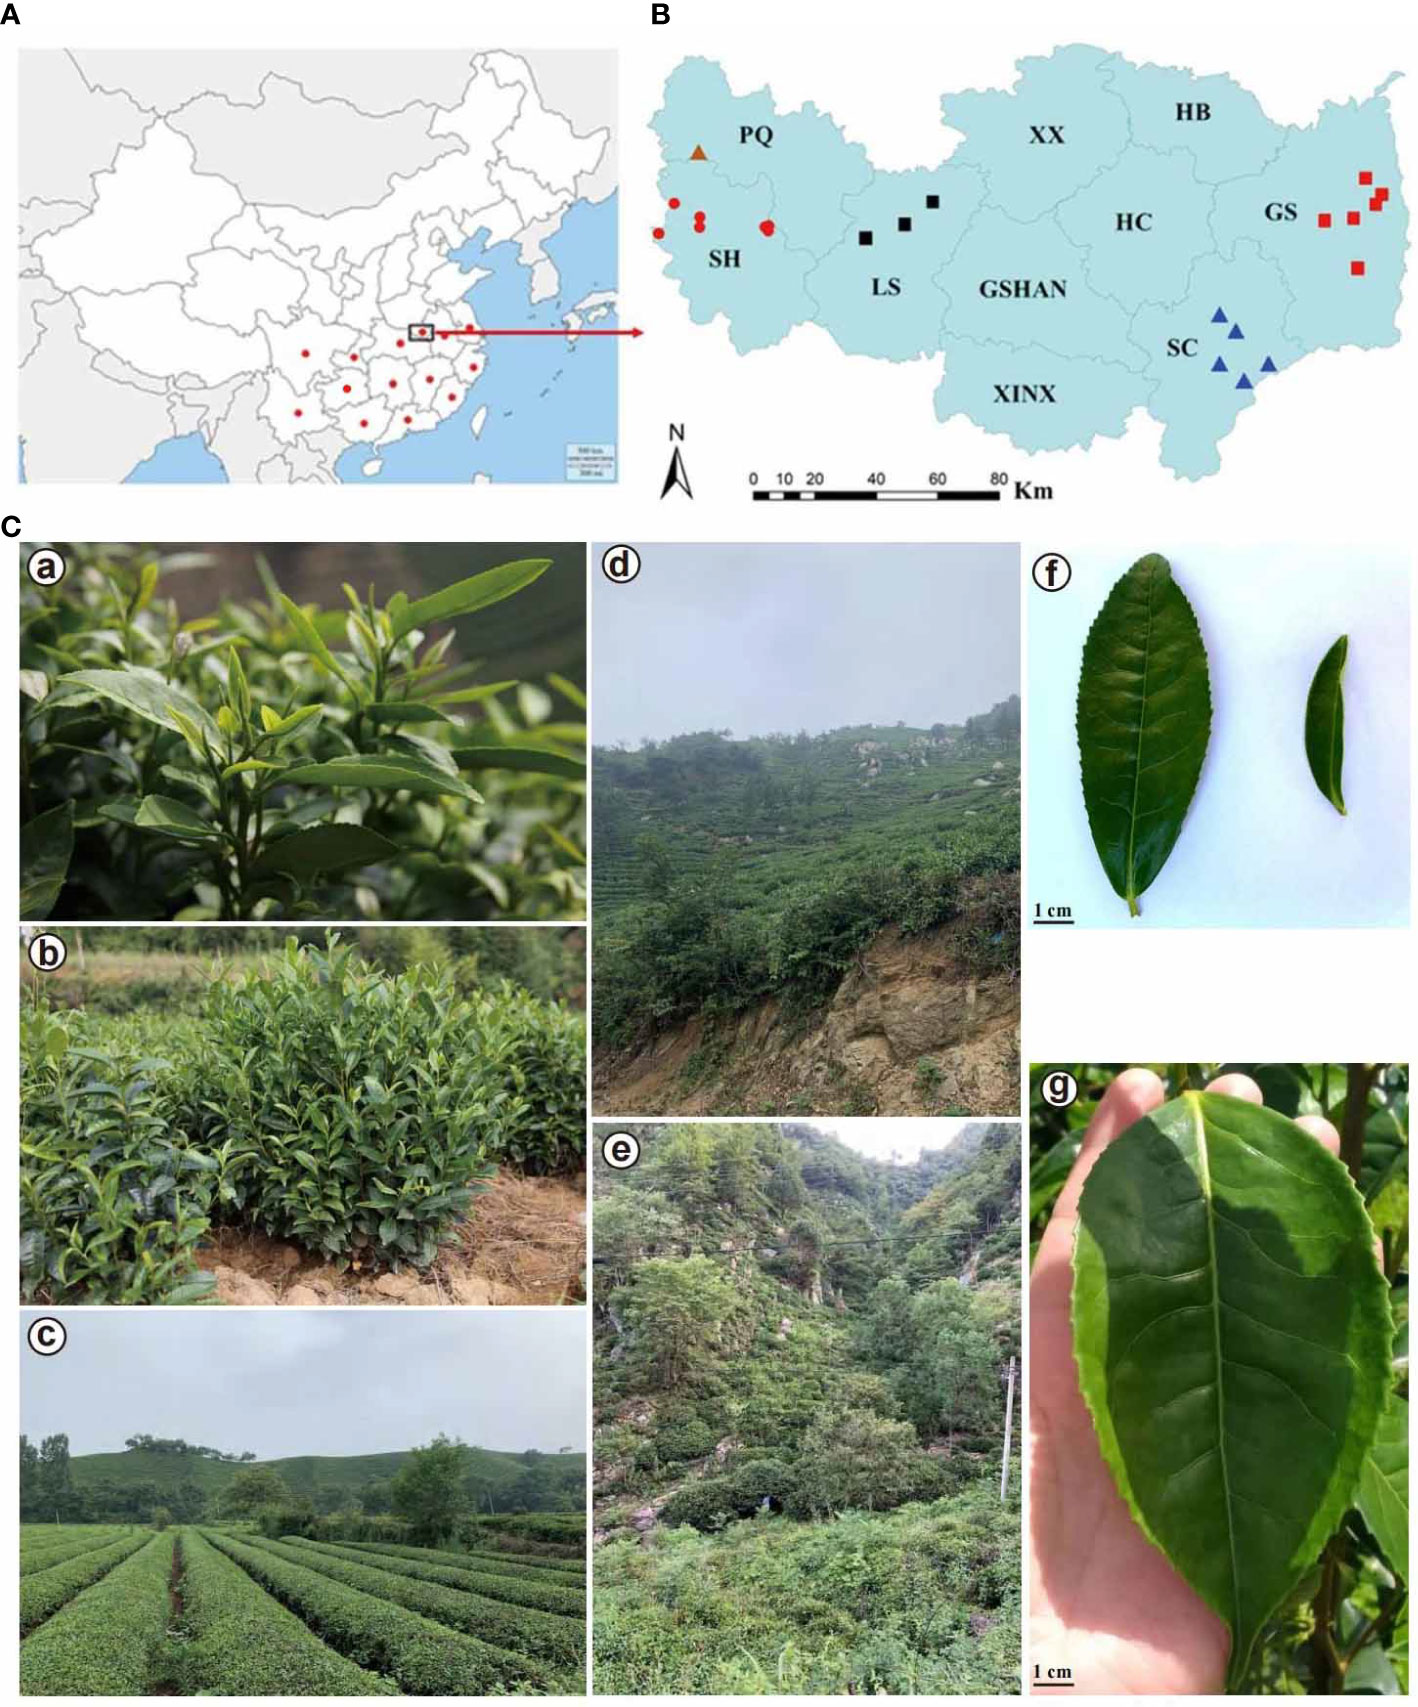 Metabolite signatures of diverse Camellia sinensis tea populations